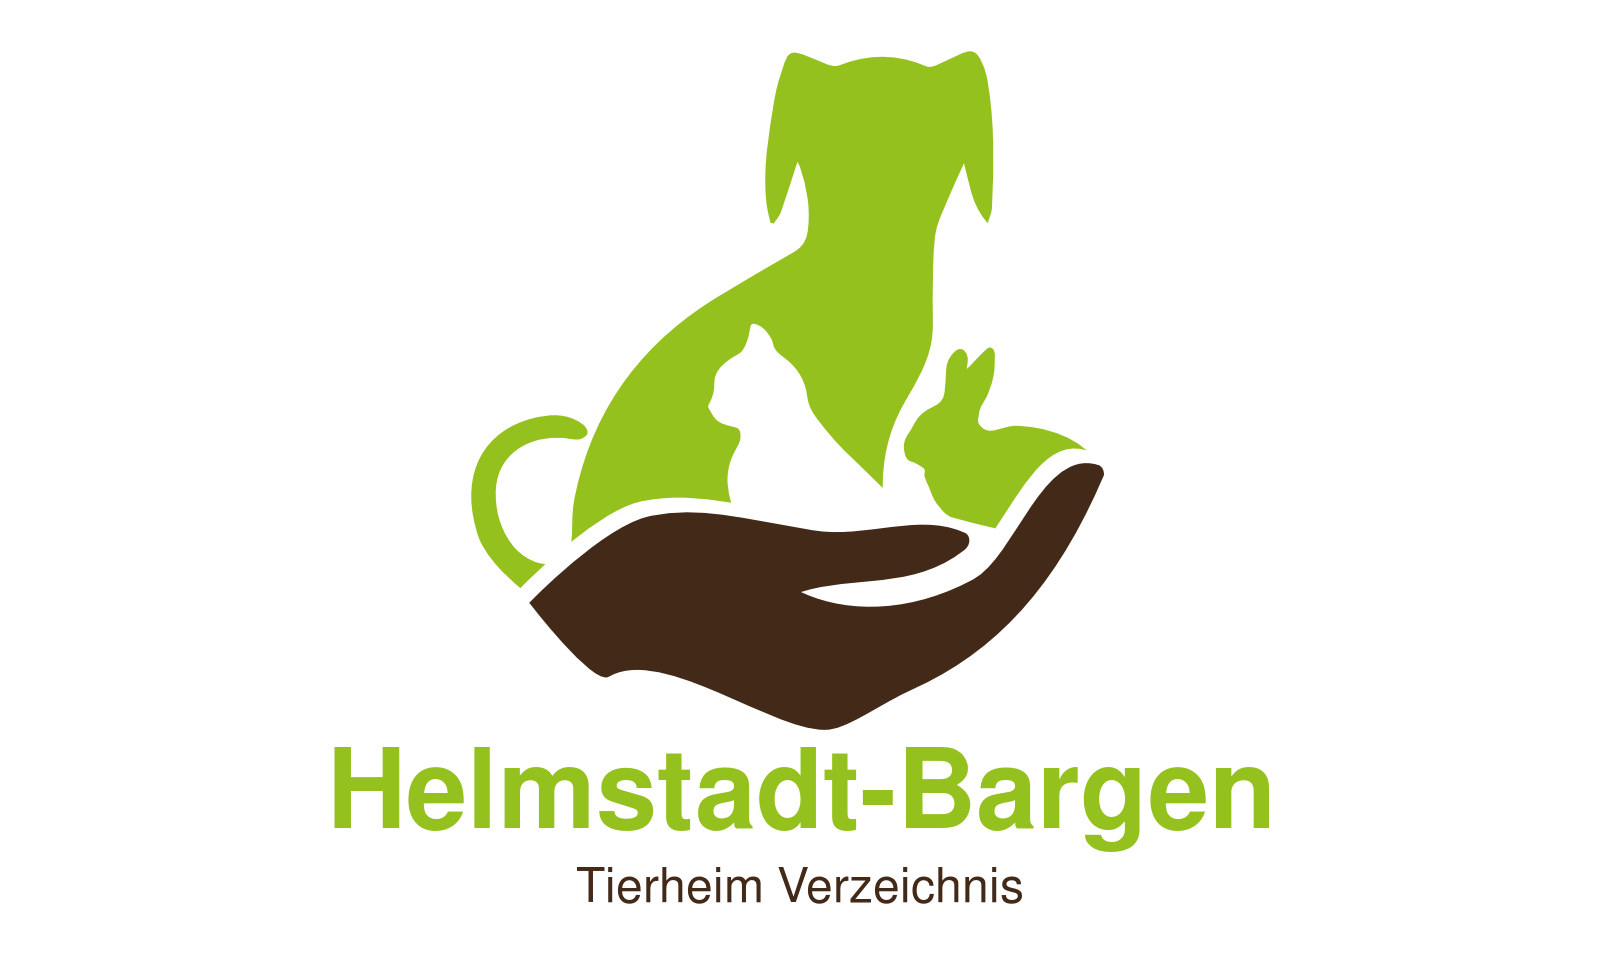 Tierheim Helmstadt-Bargen